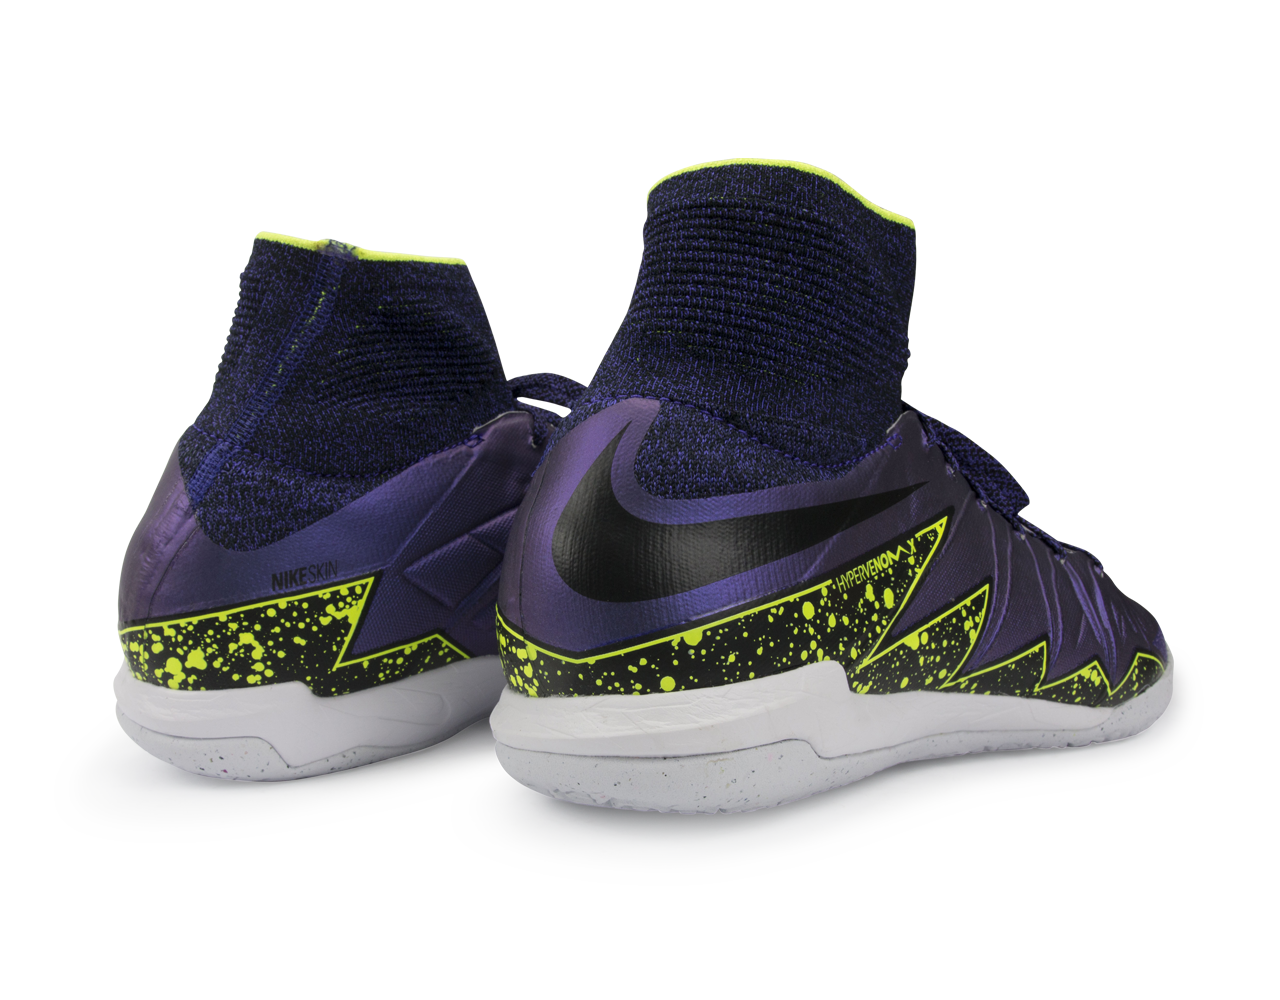 Nike Men's HypervenomX Proximo Indoor Soccer Shoes Hyper Grape/Black/Volt